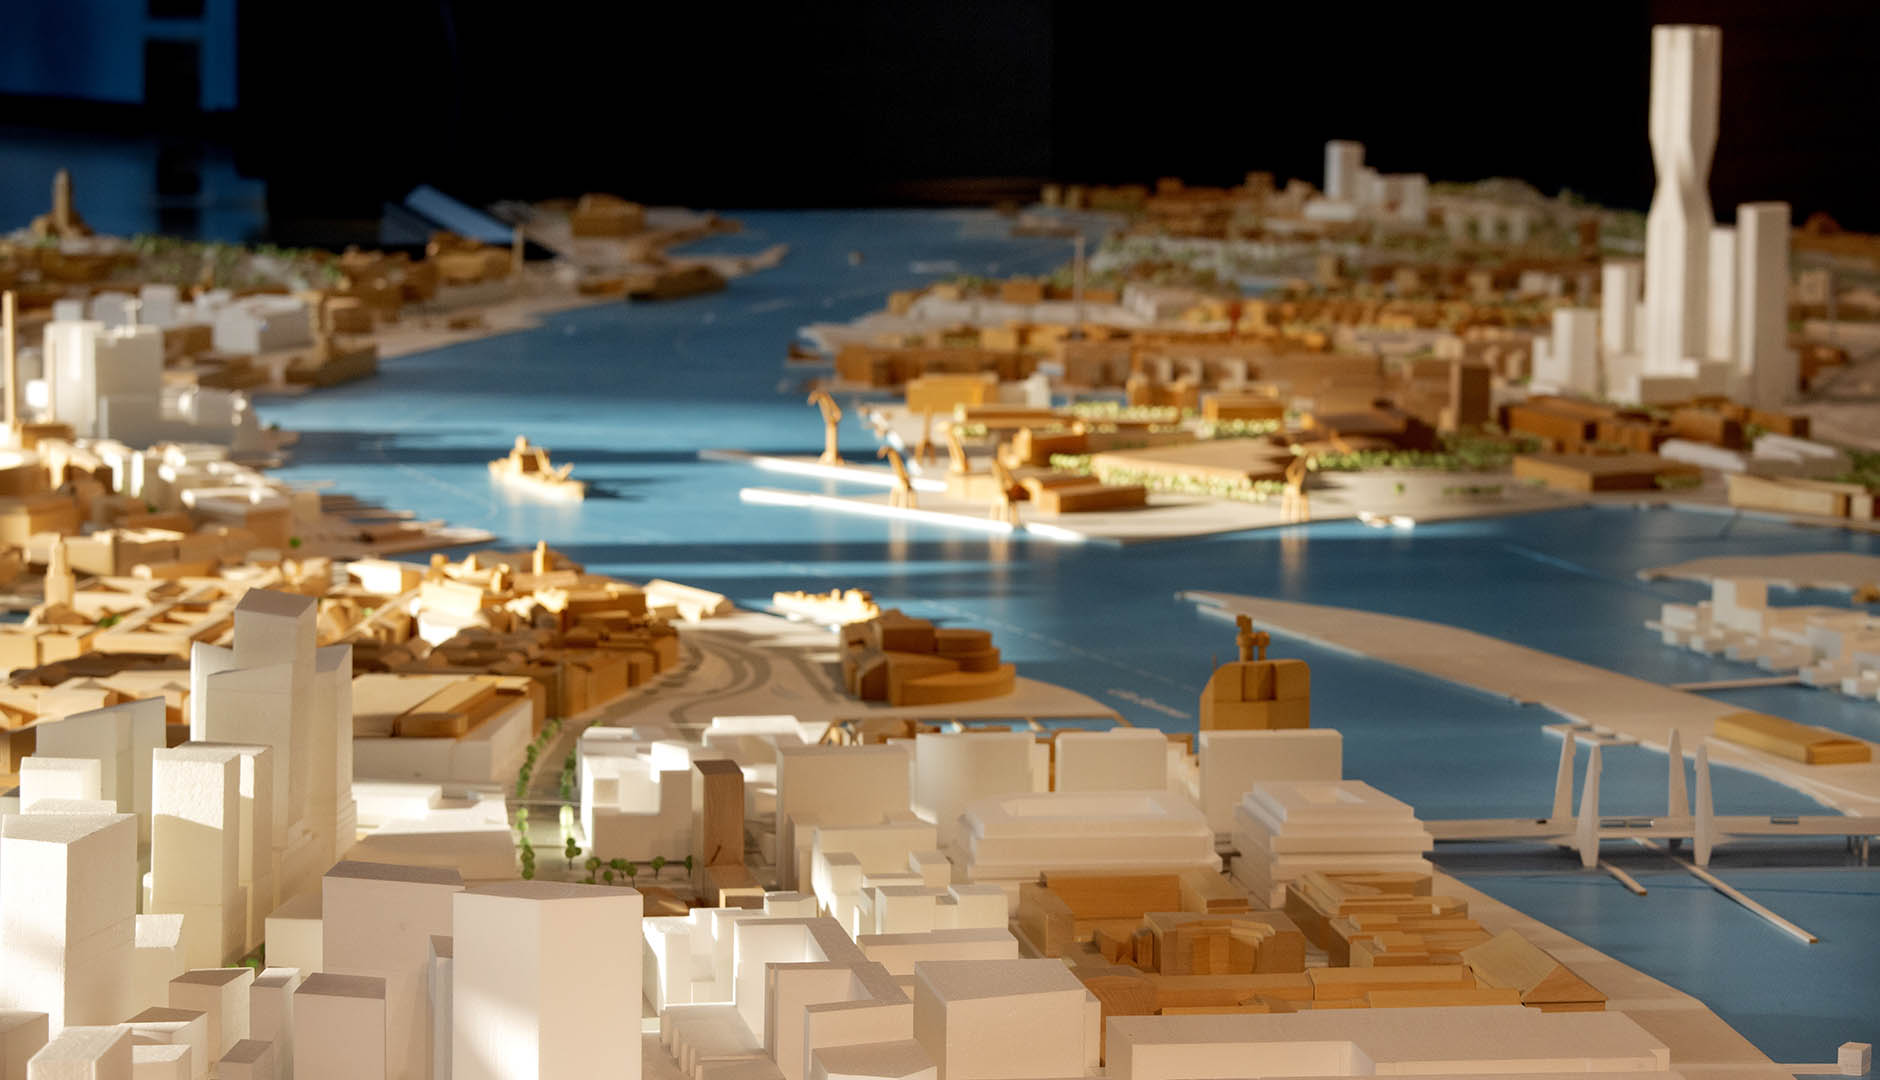 Modell över Göteborg med framtida byggprojekt